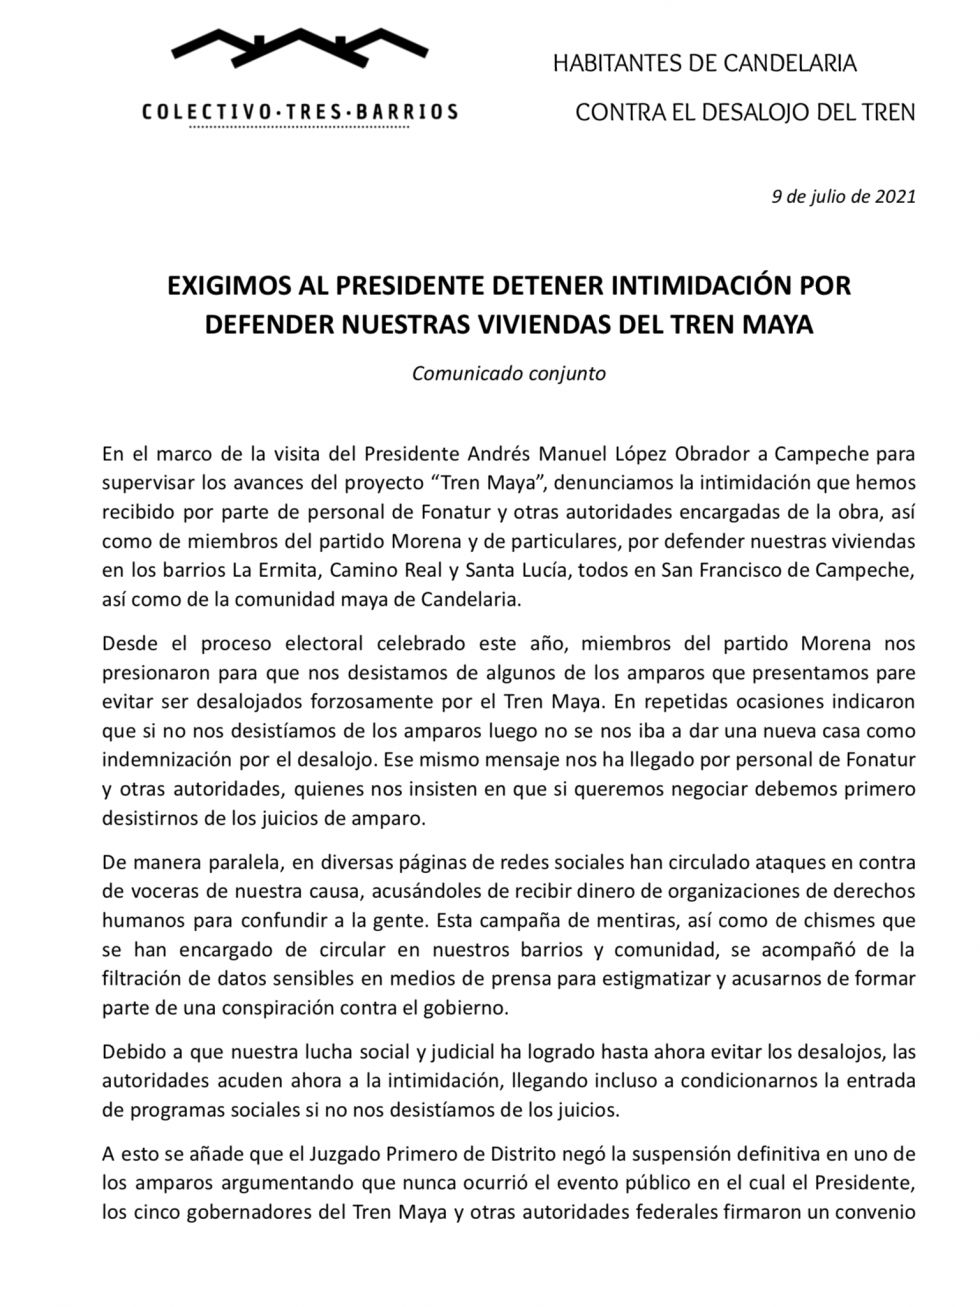 Exigimos al presidente detener intimidación por defender nuestras viviendas del Tren Maya